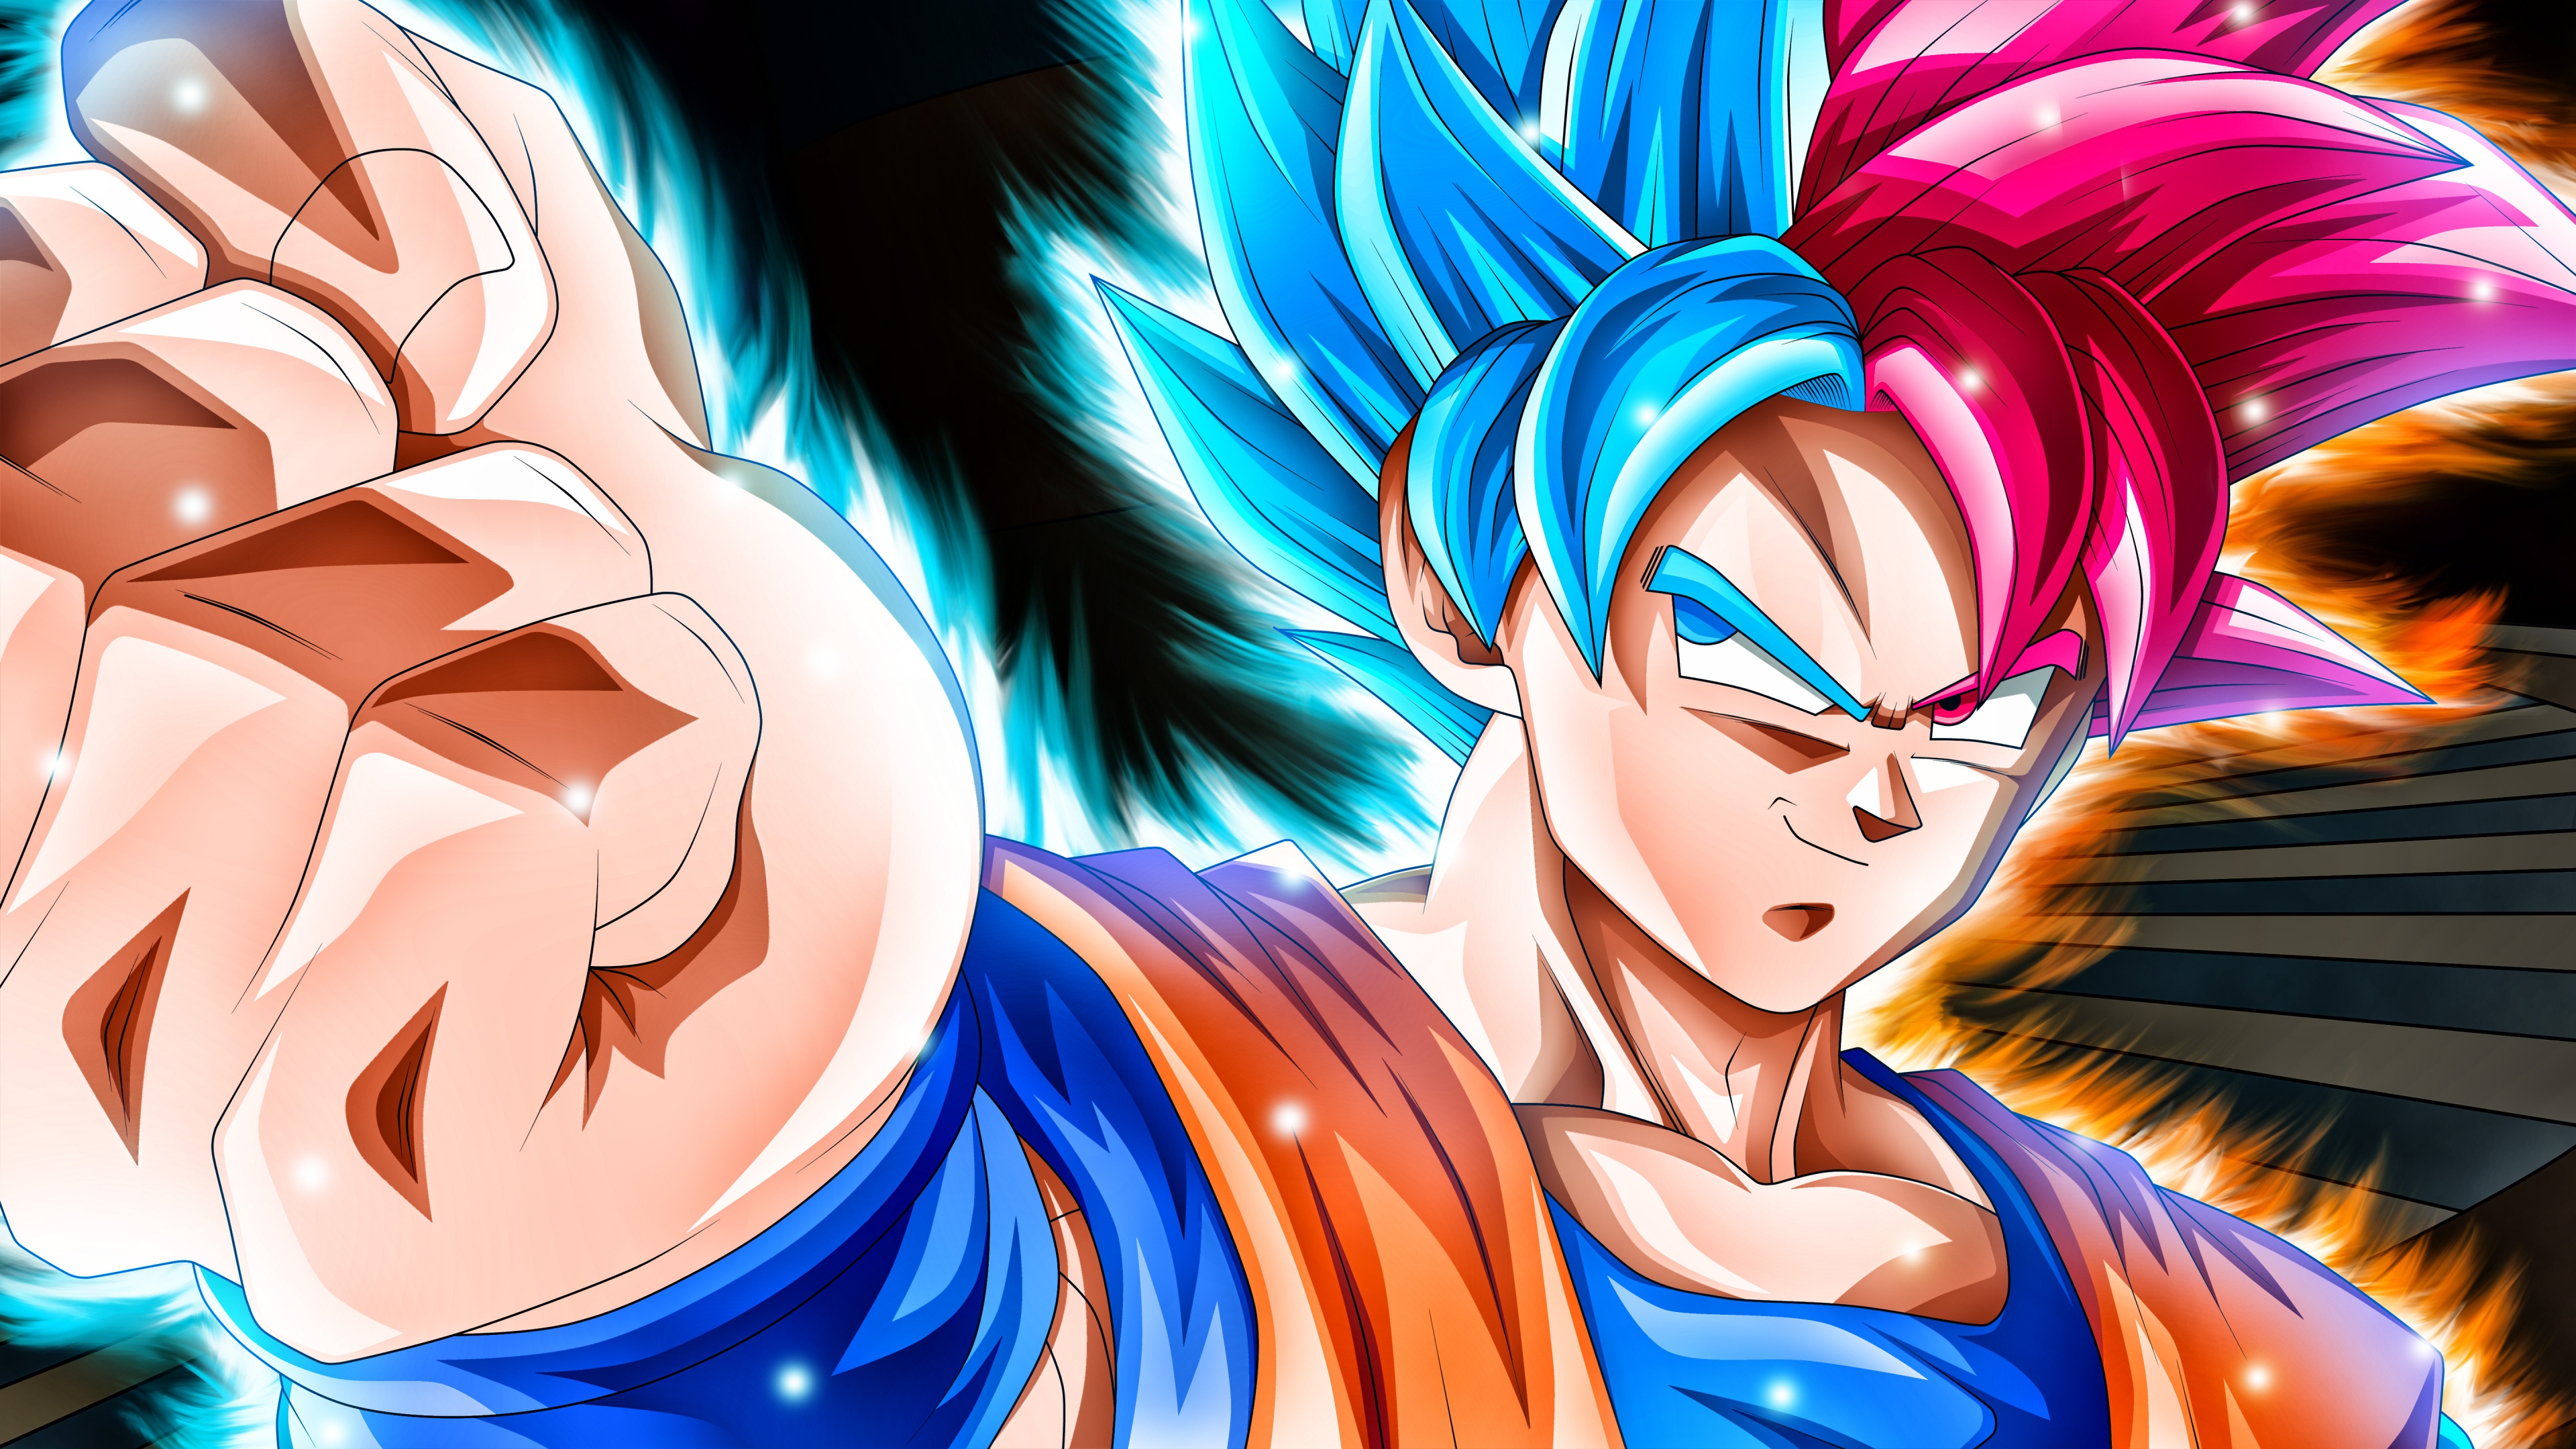 Goku Super Saiyan Blue and Black Goku SSR Dragon Ball Super Anime Wallpaper  ID:4542